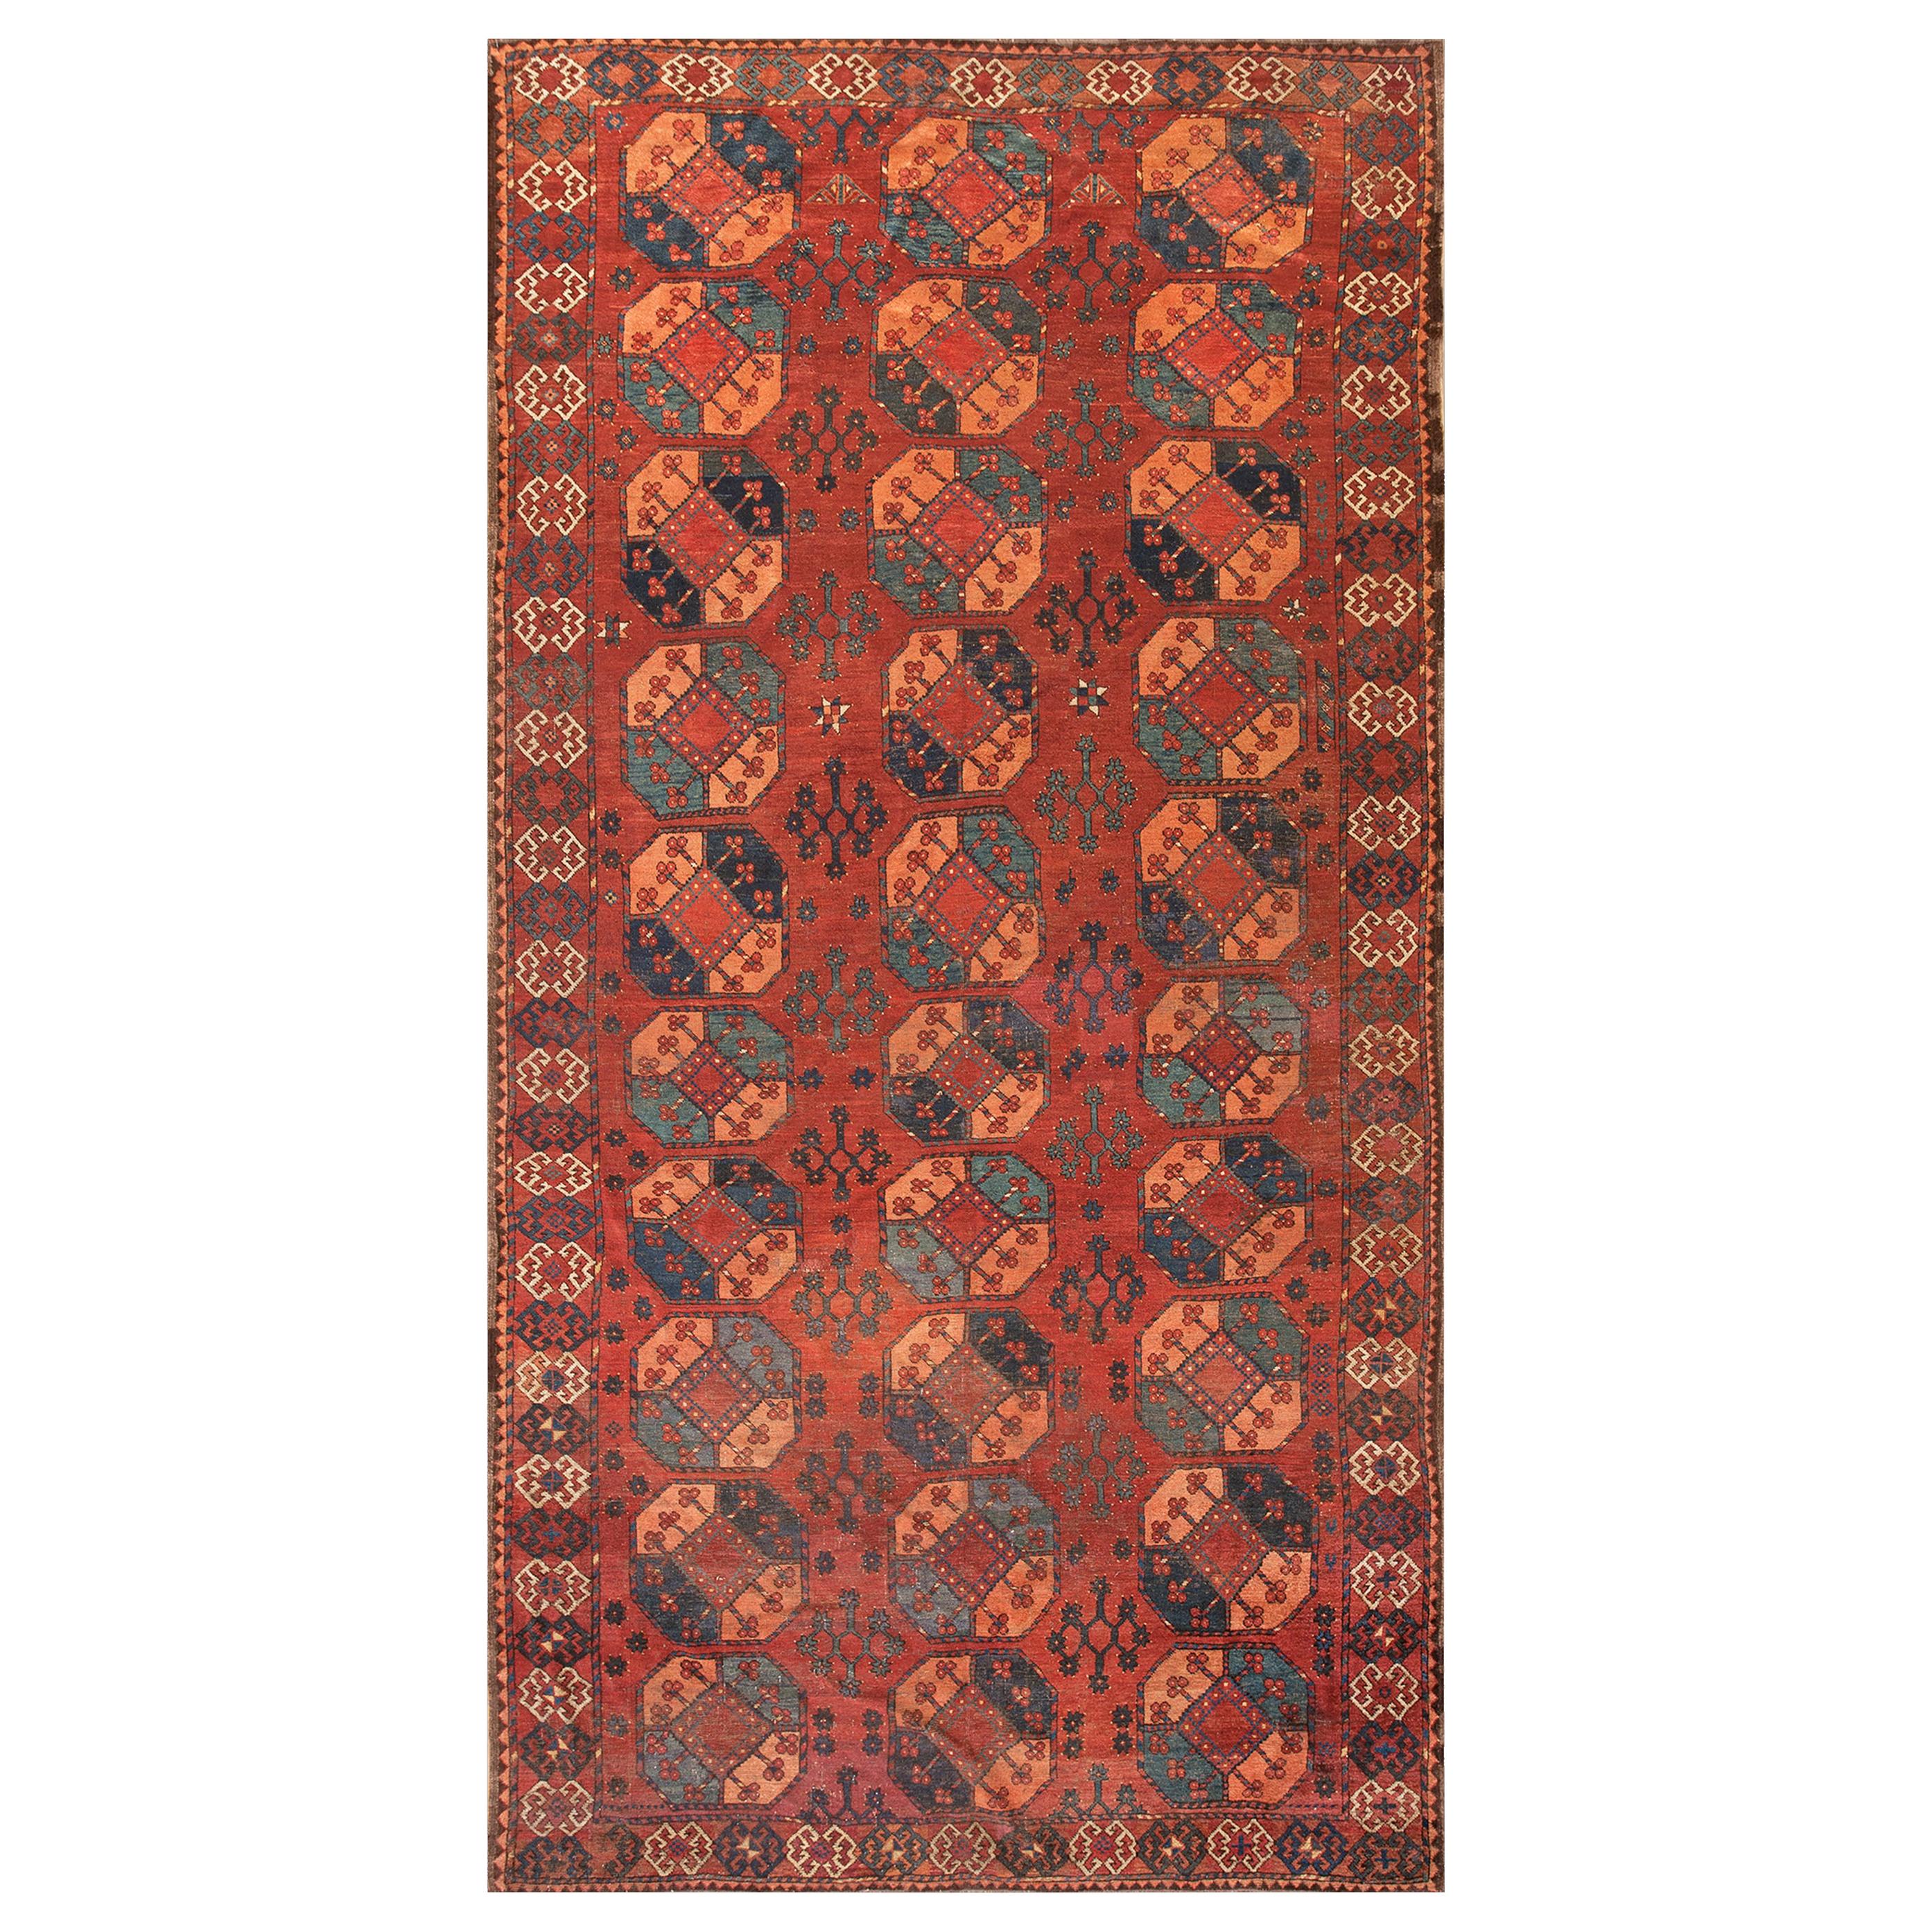 Tapis Ersari Gallery d'Asie Centrale du 19ème siècle ( 6'8" x 13' - 203 x 396 )